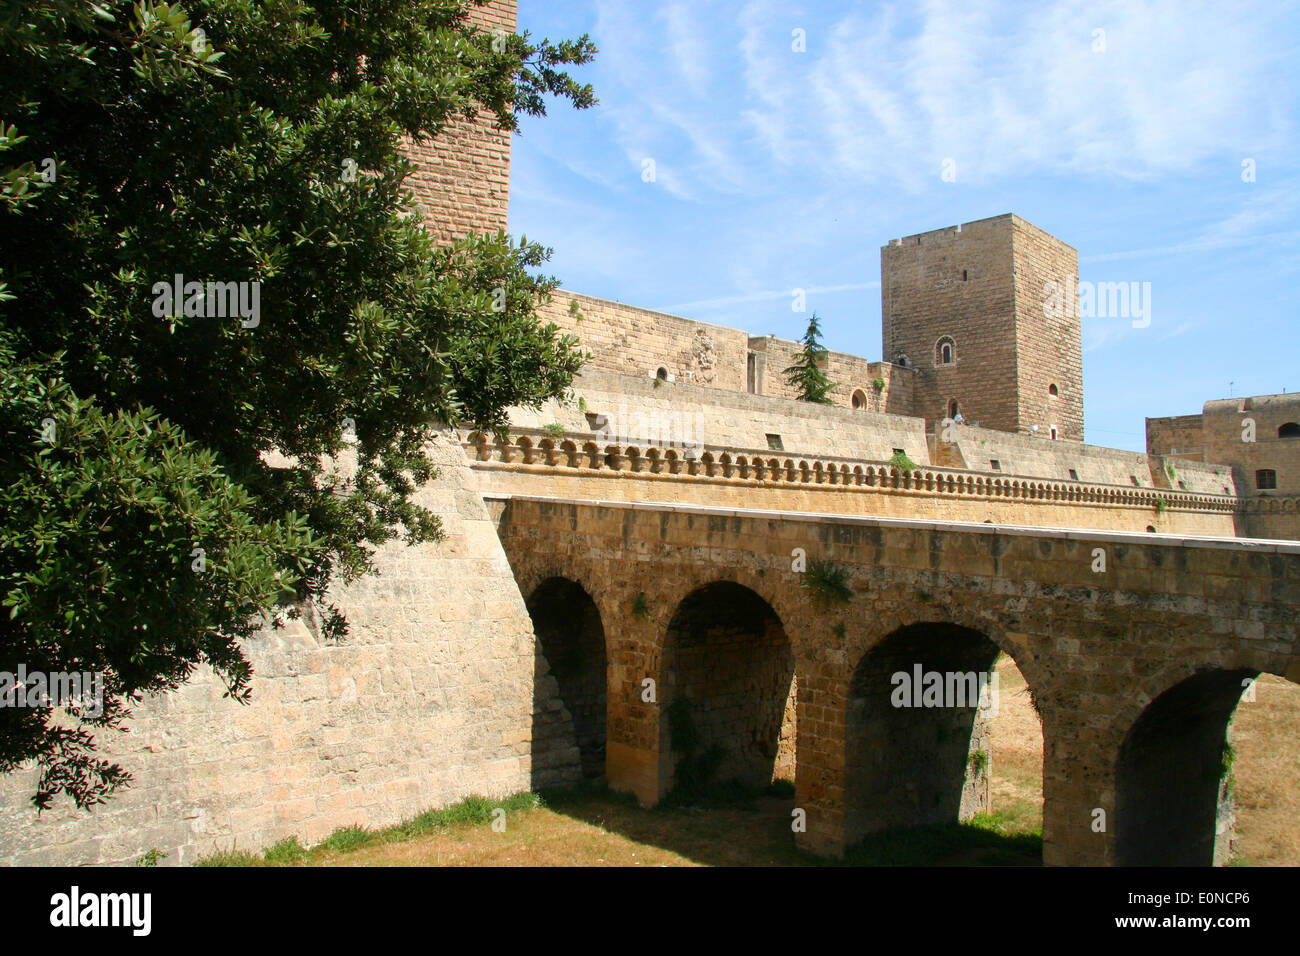 Swabian Castle or Castello Svevo, (Norman-Hohenstaufen Castle), Bari, Apulia, Italy Stock Photo